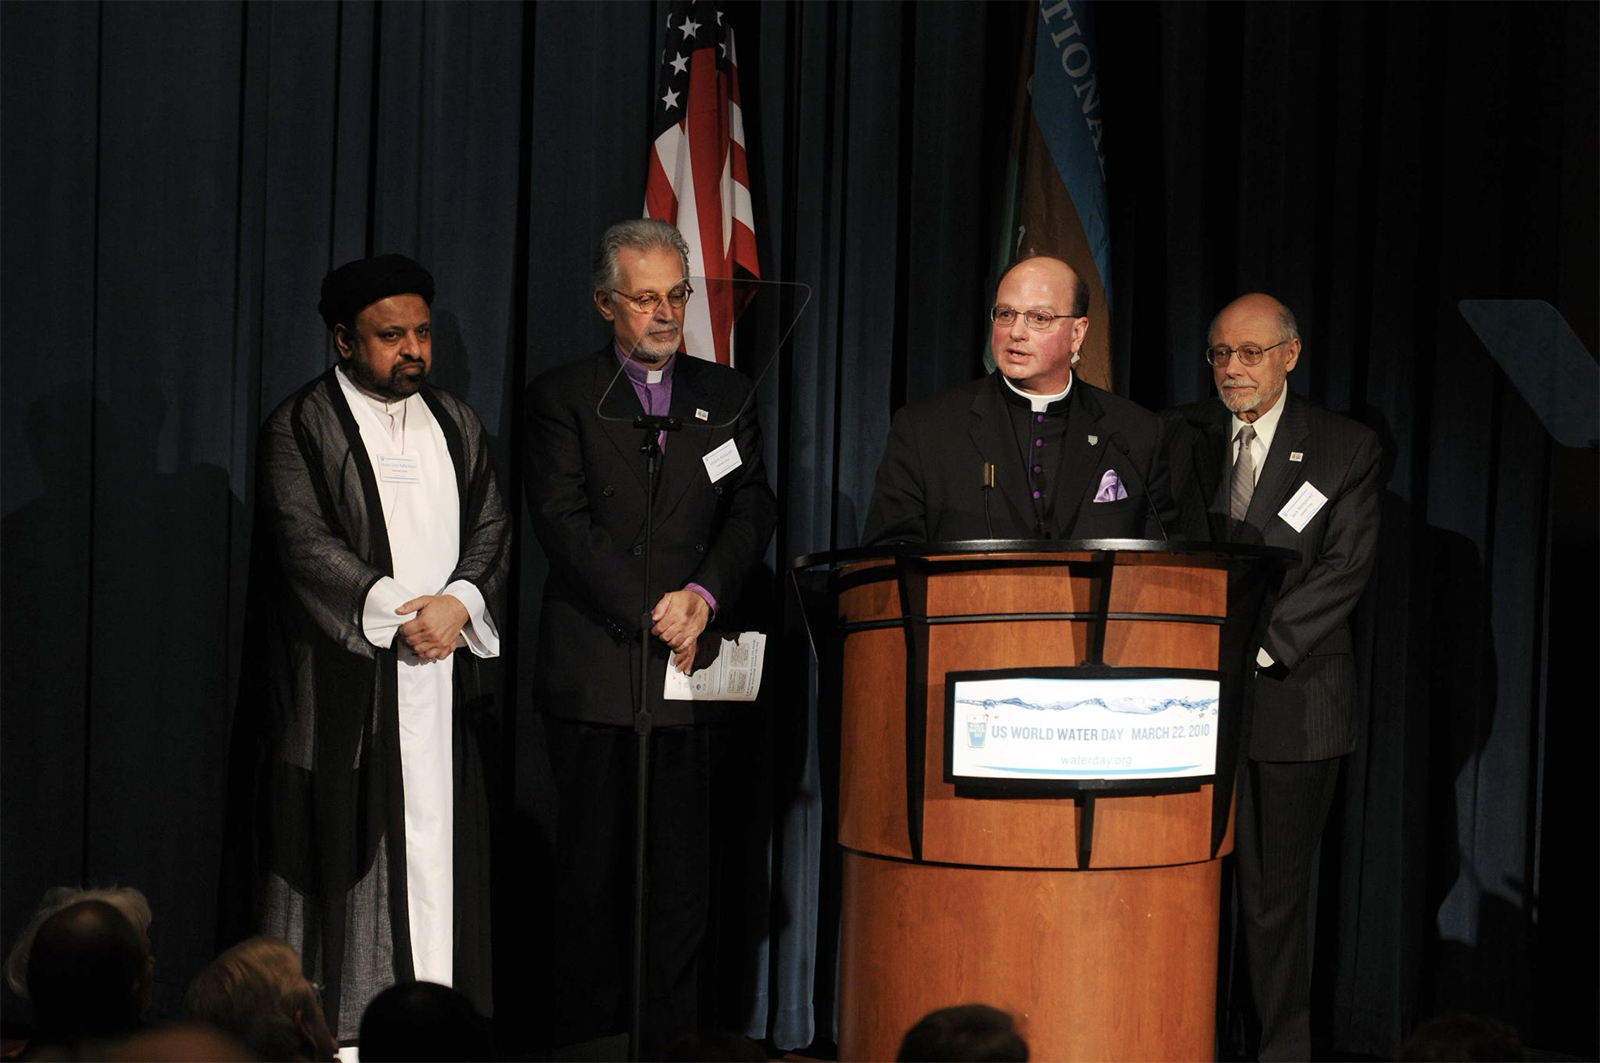 Líderes religiosos muçulmanos, ortodoxos armênios, episcopais e judeus participam de um evento do Dia Mundial da Água na sede da National Geographic em Washington, DC, em 22 de março de 2010. (Foto de Susan K. Barnett)